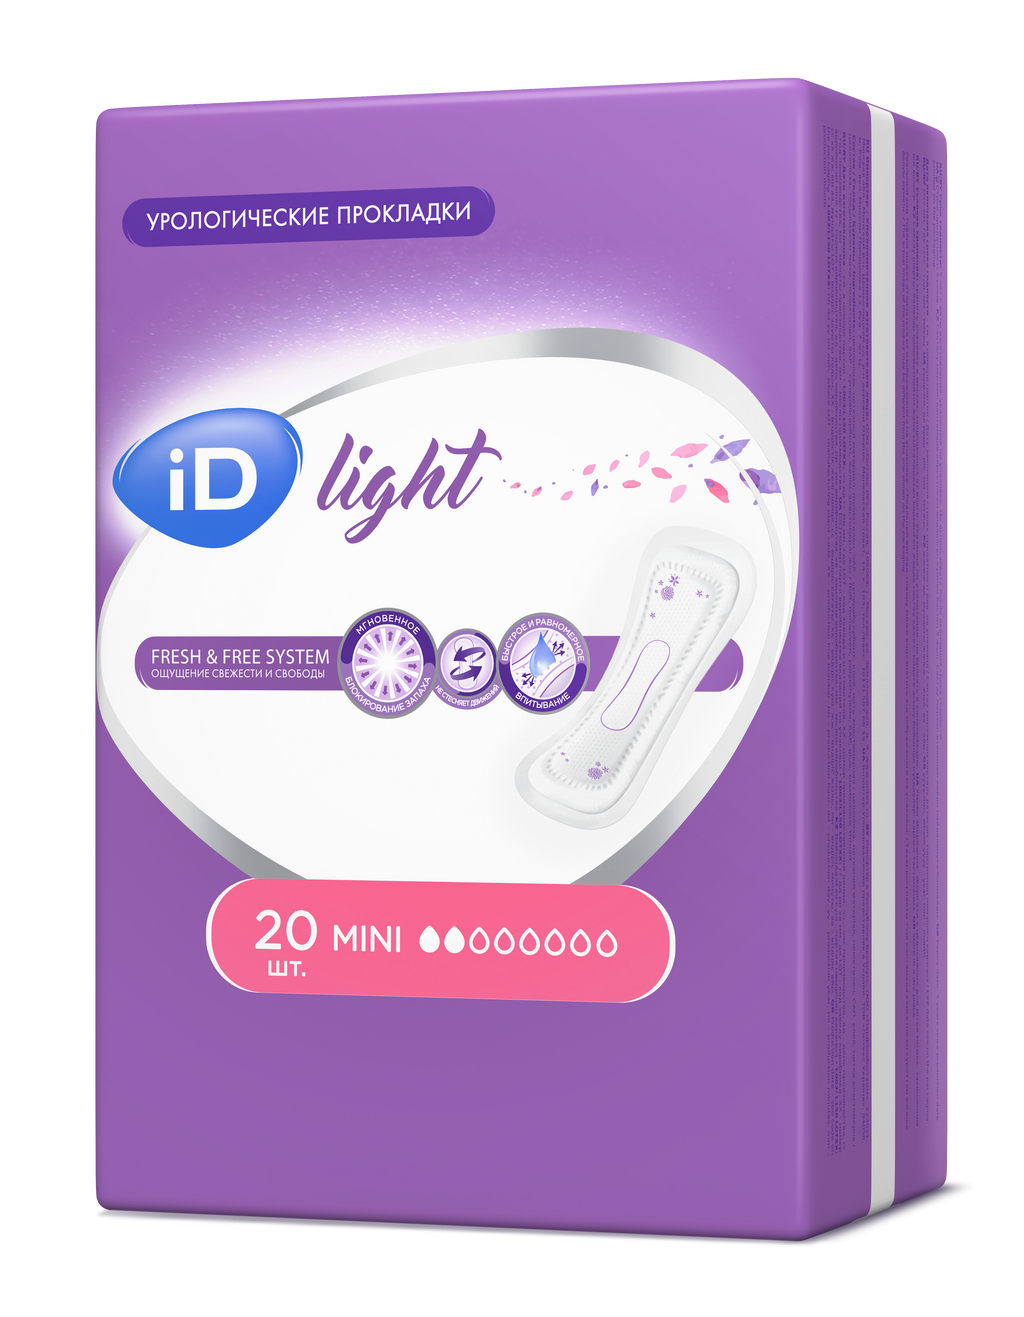 фото упаковки iD light mini прокладки урологические